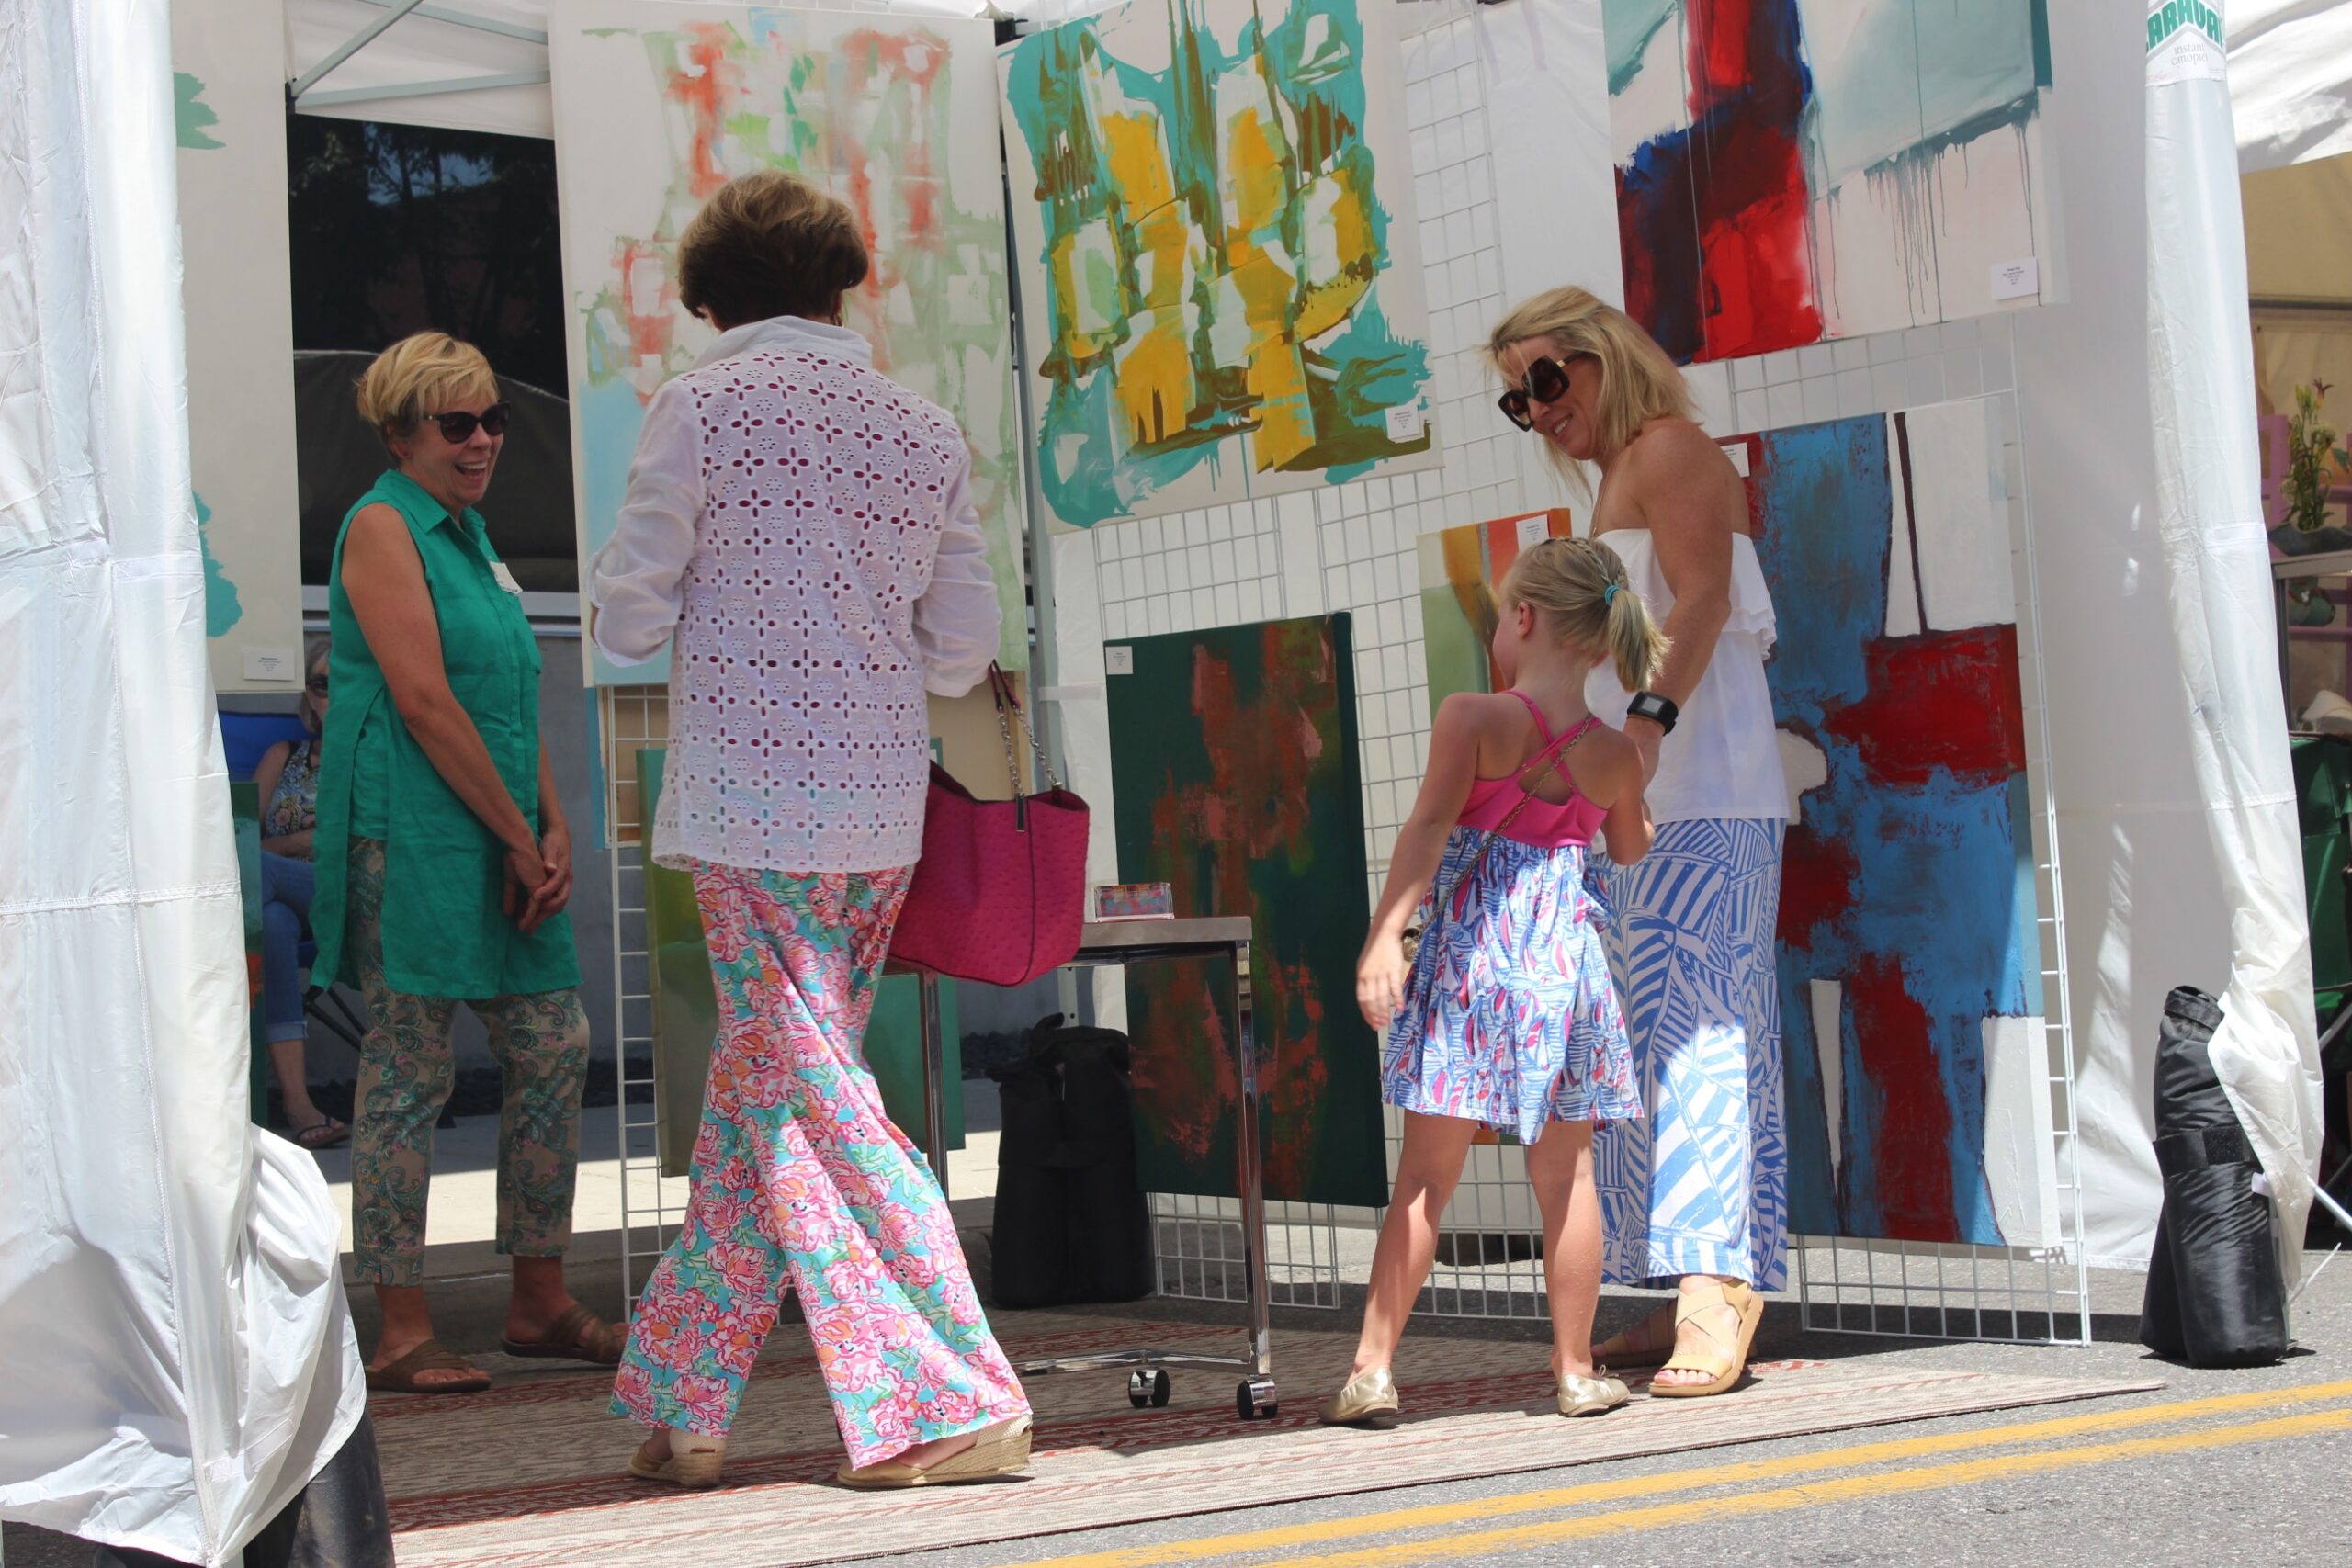 65th Annual Sidewalk Art Show – Sunday